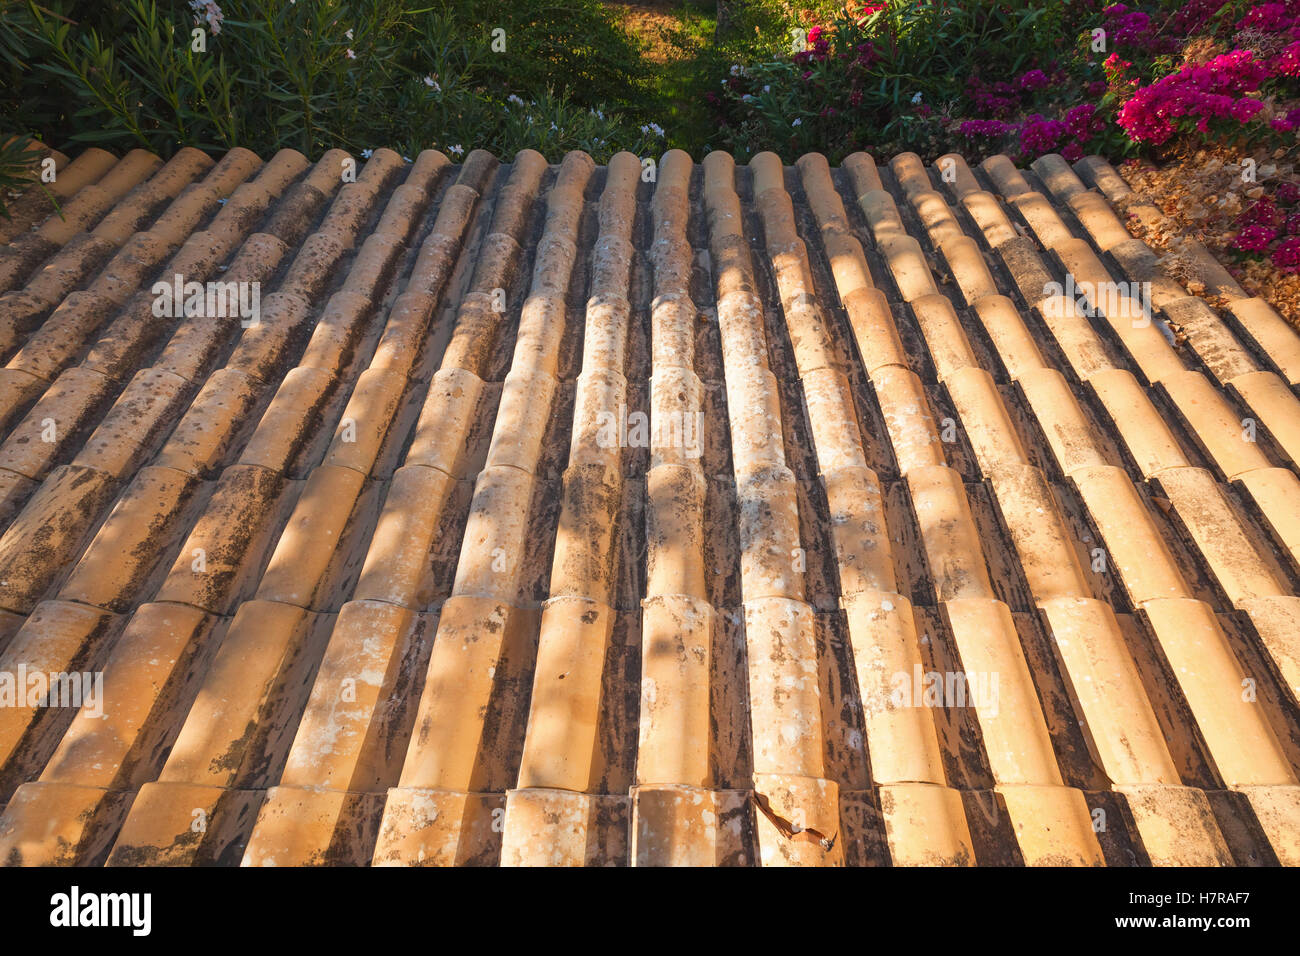 Carrelage ancien pente de toit descend dans un jardin d'été, photo de fond avec effet de perspective Banque D'Images